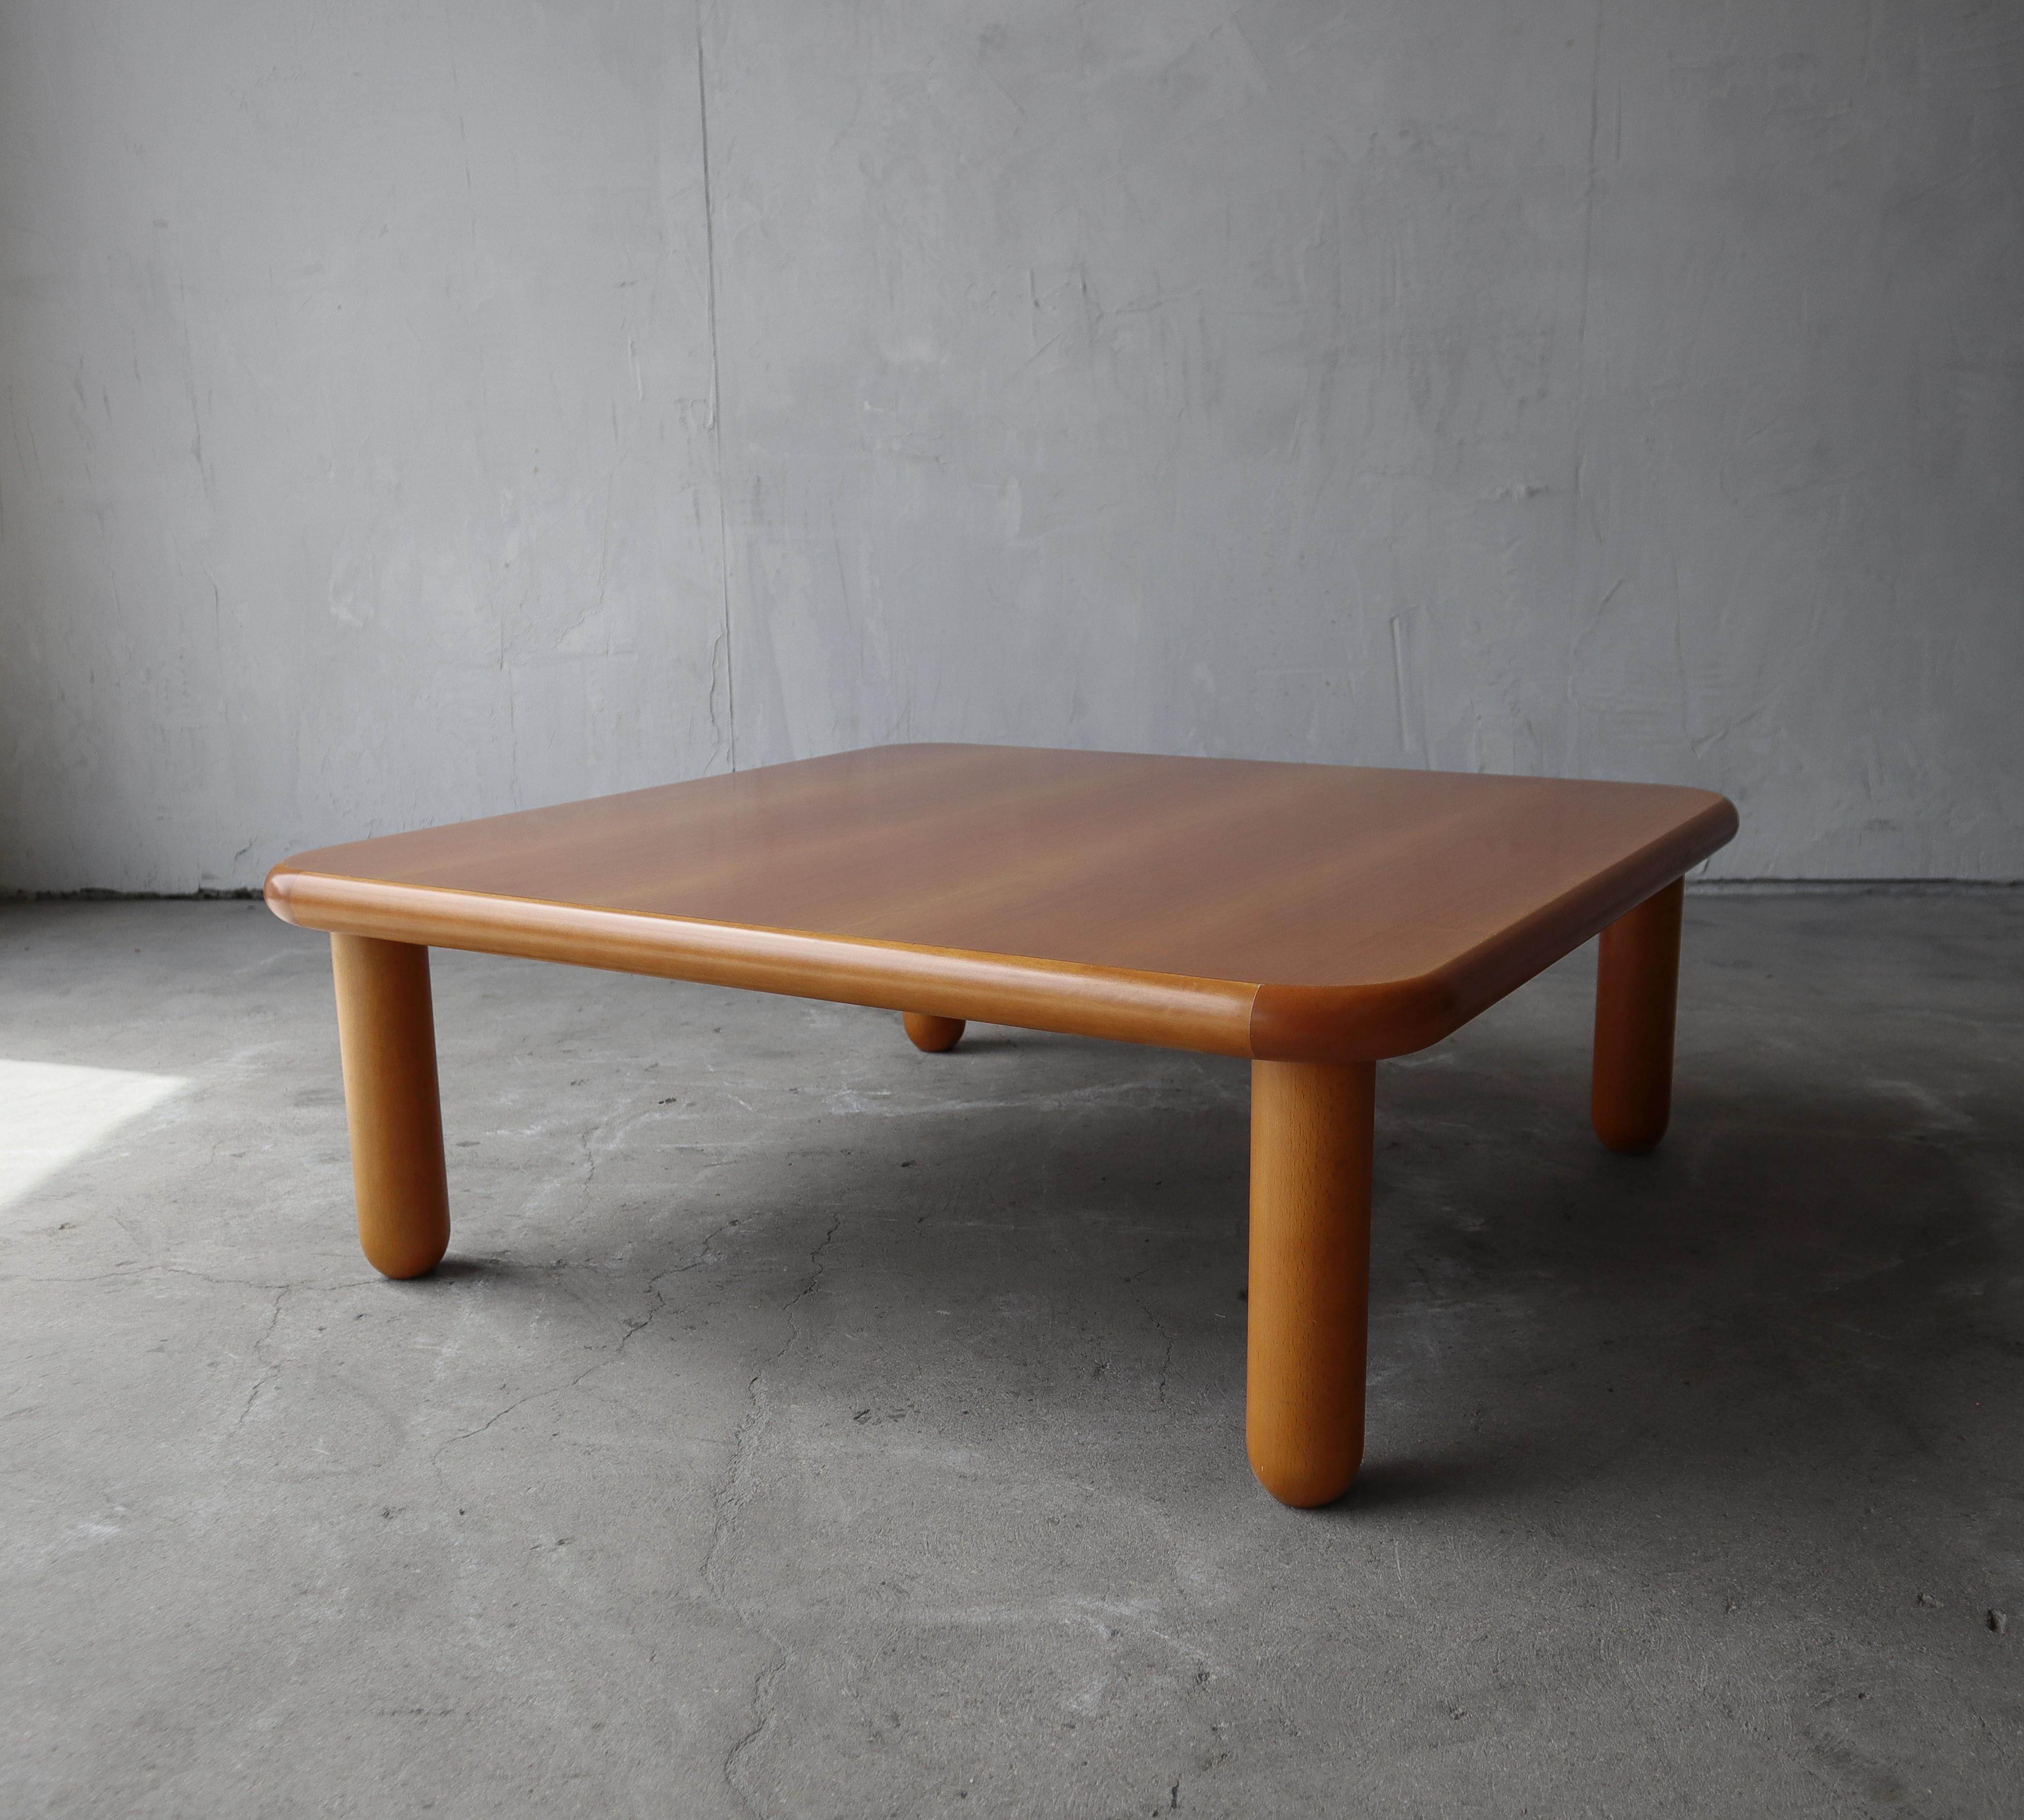 Bigli par son style mais pas par sa taille, cette petite table basse post-moderne est parfaite pour les petits espaces qui ont besoin d'une pièce unique. Les coins carrés arrondis et les pieds en forme de balle ajoutent beaucoup de style au